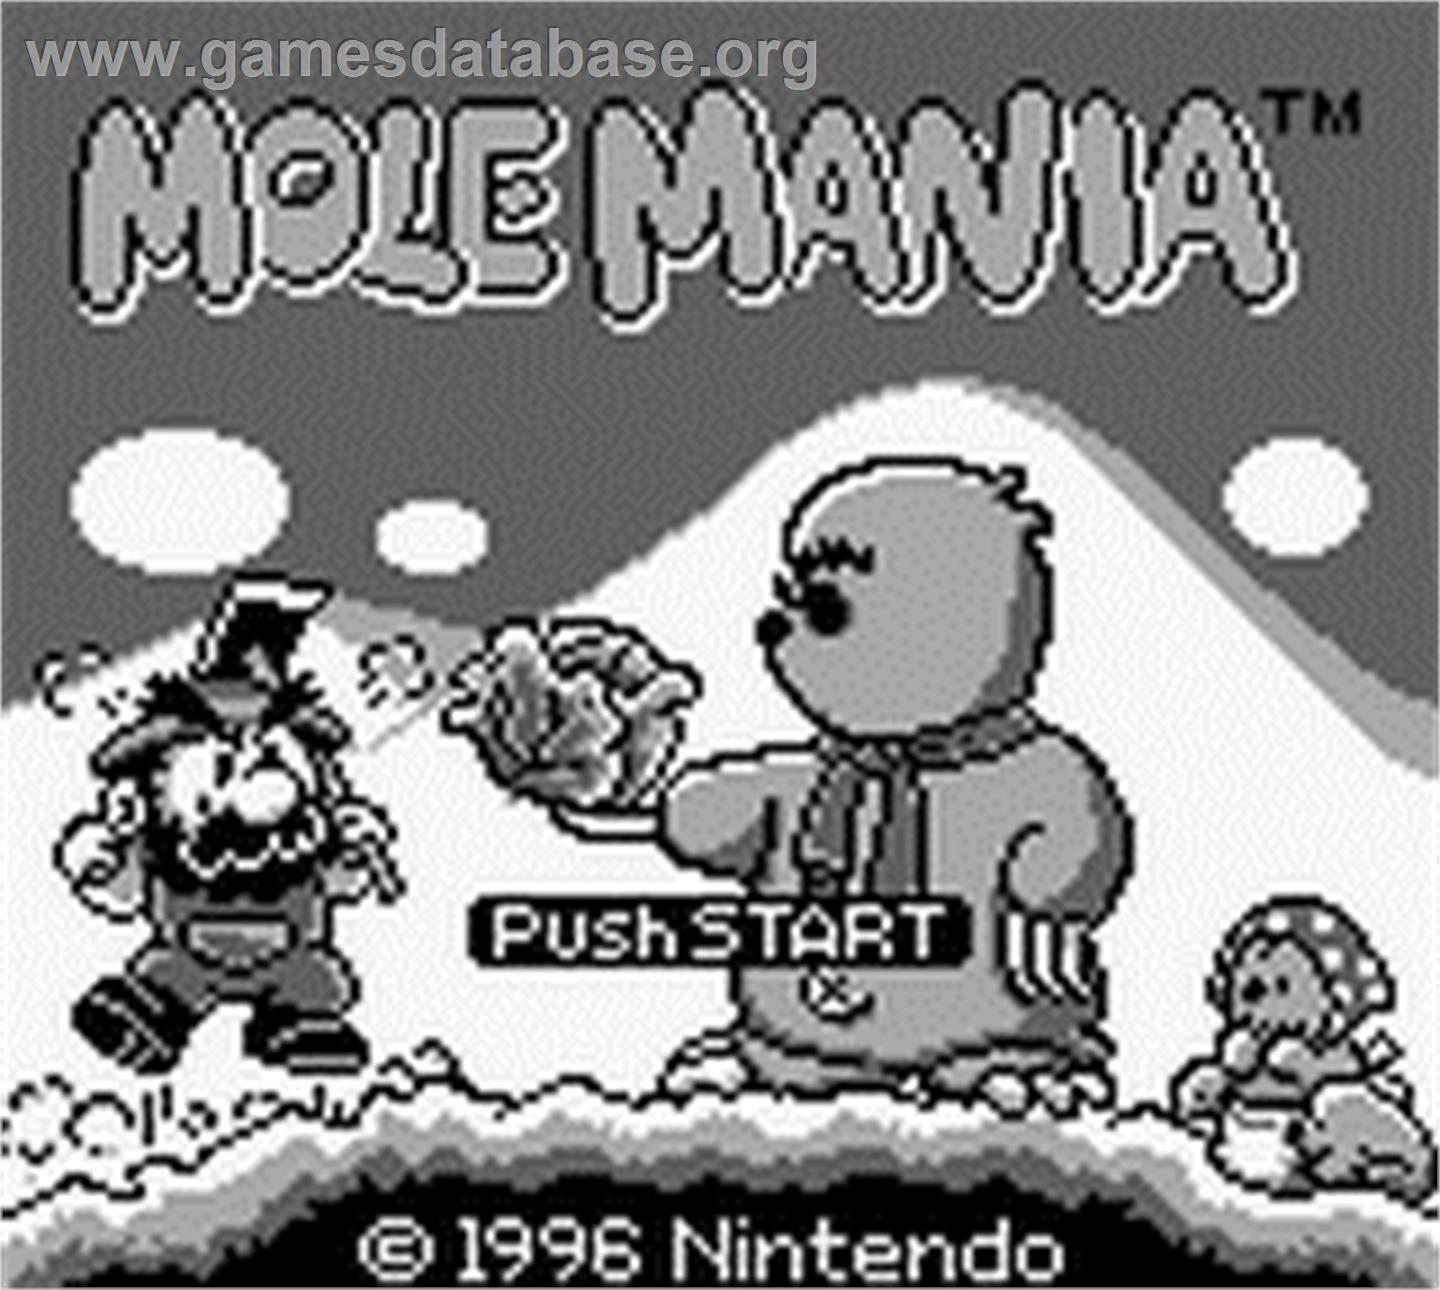 Mole Mania - Nintendo Game Boy - Artwork - Title Screen